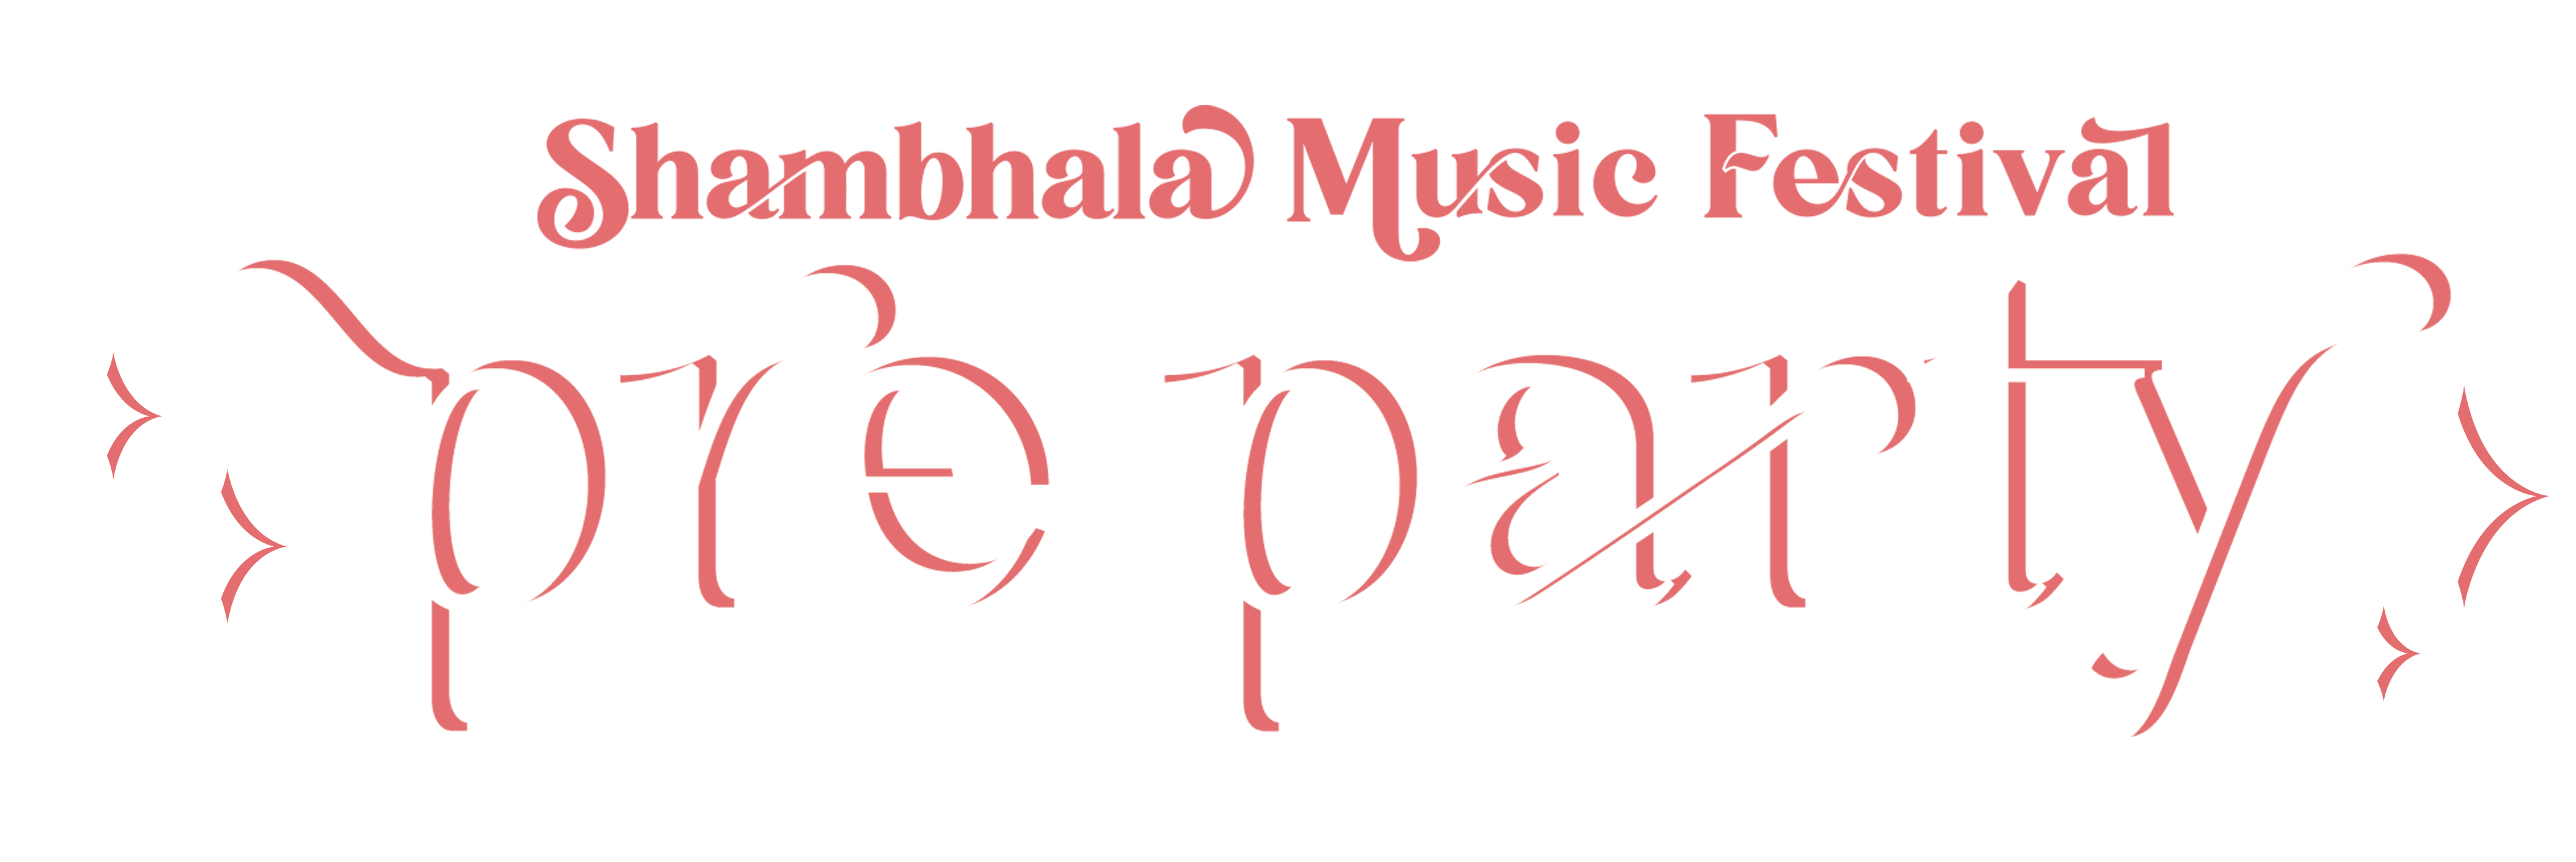 Shambhala Pre-Party logo